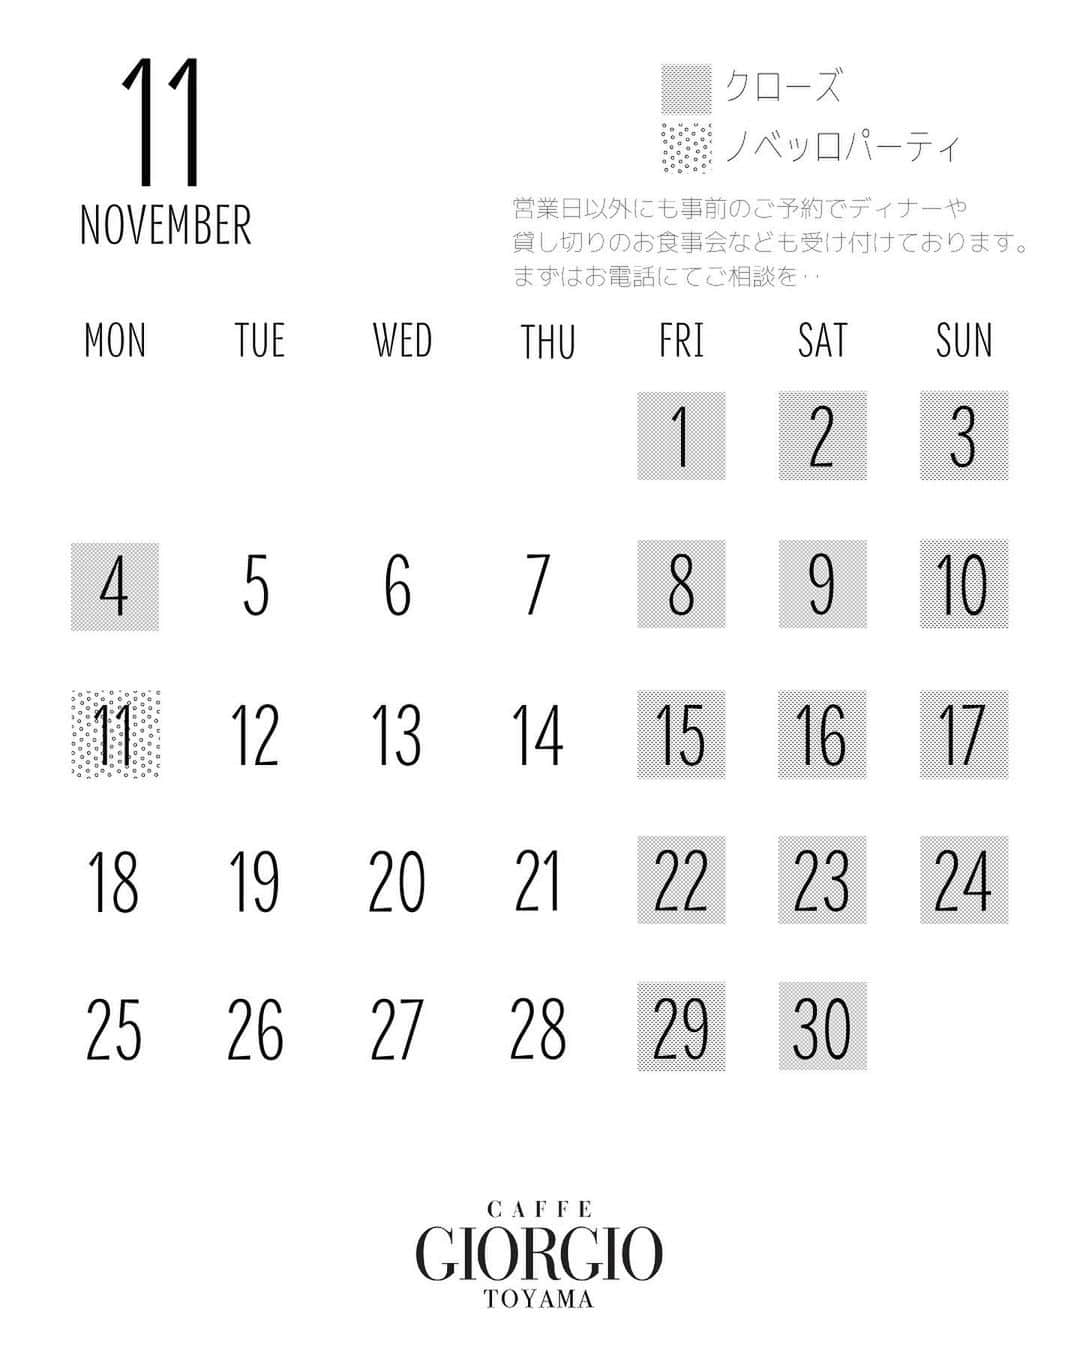 CAFFE GIORGIO Toyama カフェジョルジオのインスタグラム：「11月のランチ営業カレンダーです ✌︎ 11月11日開催のワインパーティー【ノベッロ　フェスティバル2019】🍷 この日限りのコースやワイン含むドリンクの飲み放題🥂ランチチケットやワインが当たる抽選会もあります👏  チケットは前売りで9200円（税込）です。 お席にまだ空きがありますので是非お問い合わせください🥳  #caffegiorgio #富山ランチ #富山ディナー #完全予約制ディナー #富山グルメ #富山カフェ #カフェジョルジオ #ヴィラグランディス #villagrandis  #villagrandistoyama #villagrandisweddingresort  #ヴィラ嫁 #富山結婚式場 #結婚式場 #結婚式場ランチ #ヴィラグランディス富山 #bリーグ #金沢ランチ #金沢カフェ #金沢グルメ」